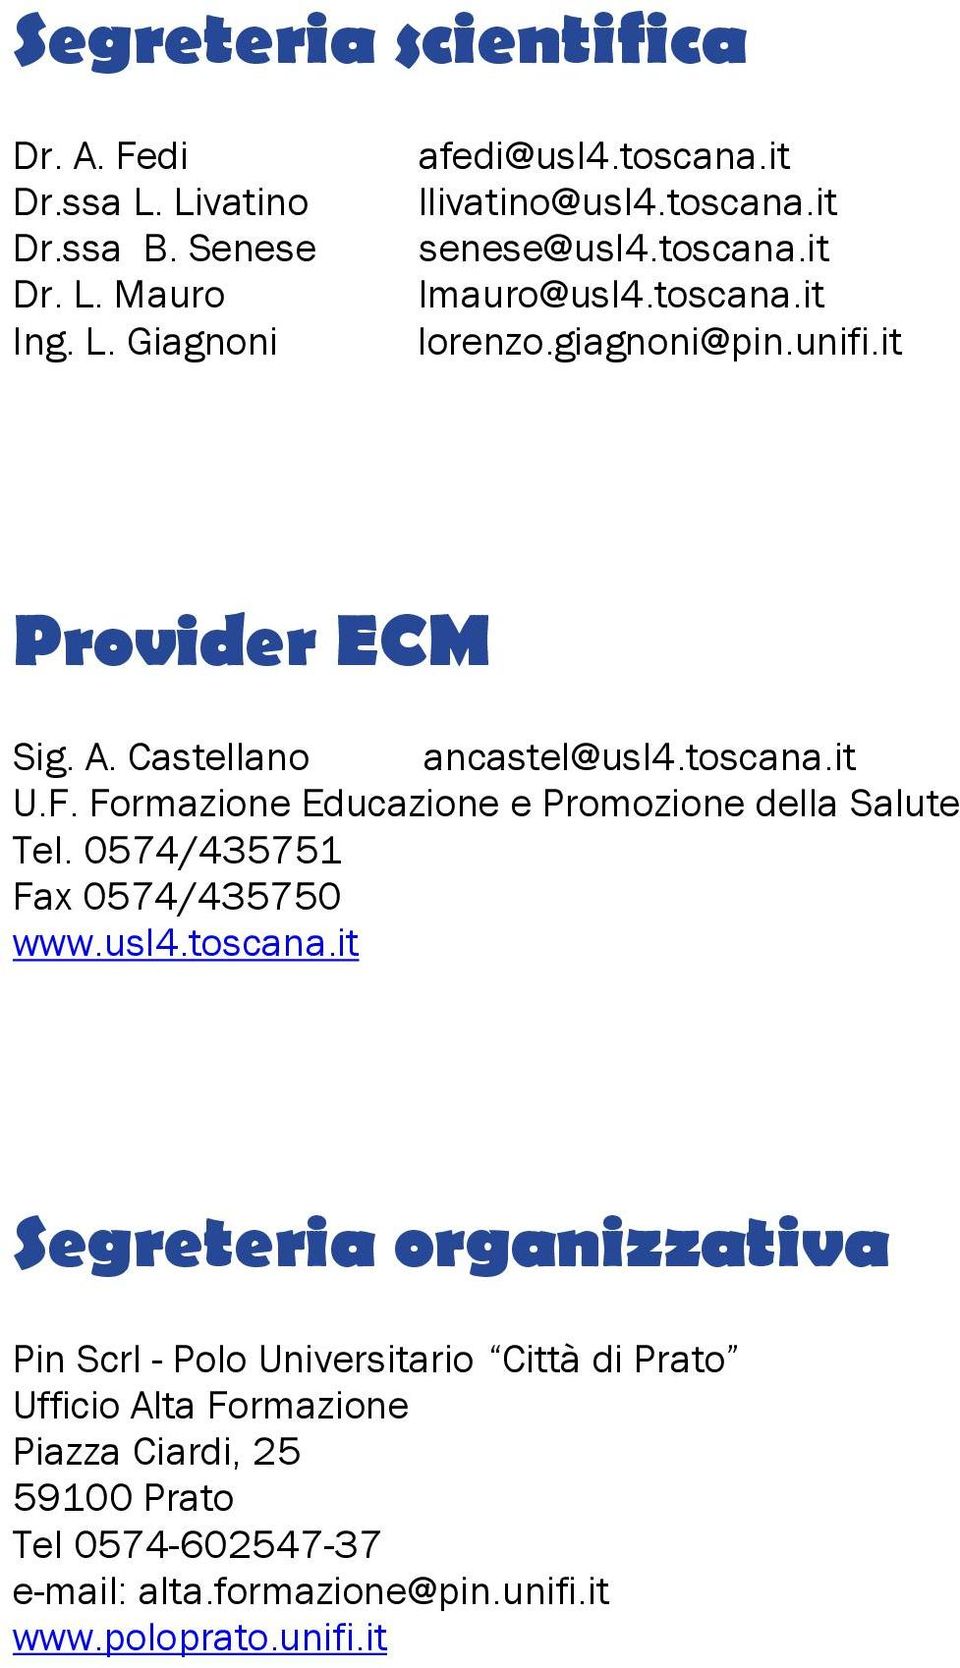 Formazione Educazione e Promozione della Salute Tel. 0574/435751 Fax 0574/435750 www.usl4.toscana.